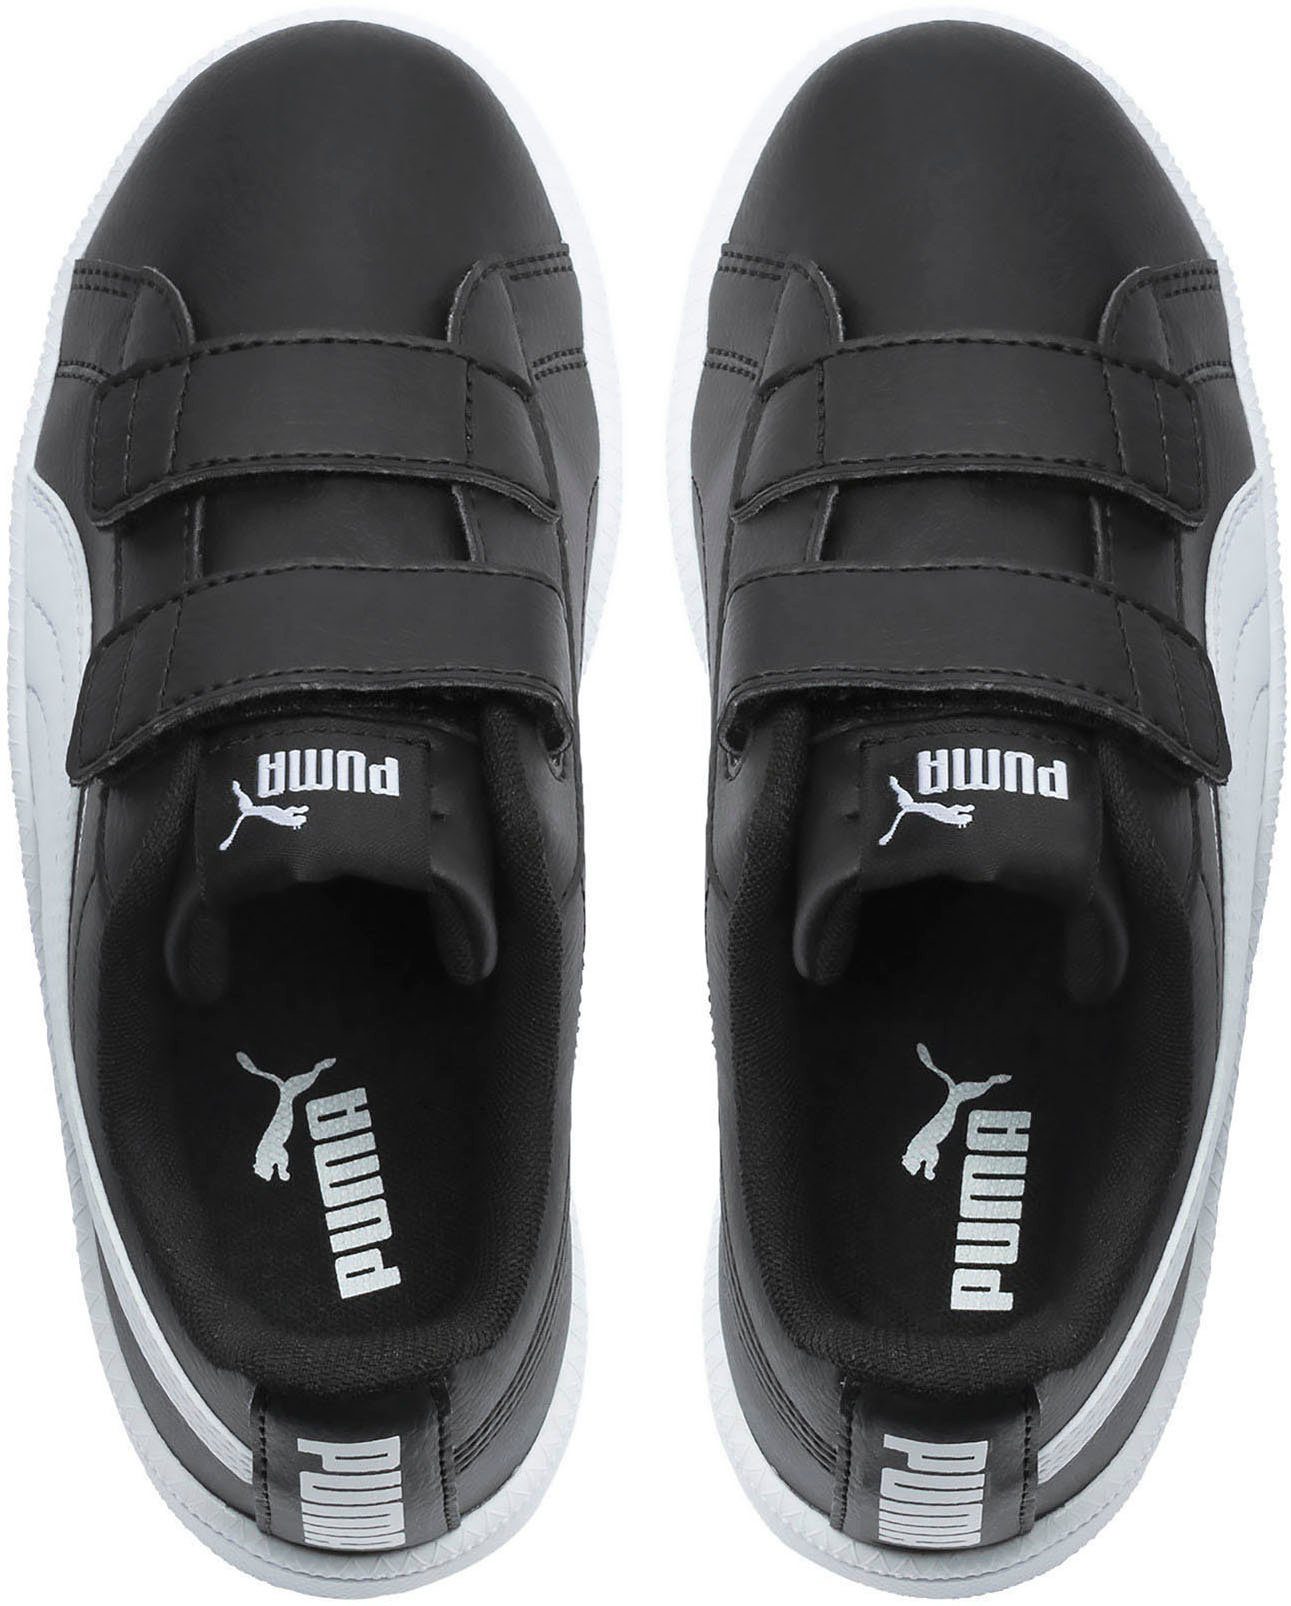 PS Klettverschluss Sneaker PUMA UP PUMA mit schwarz-weiß V